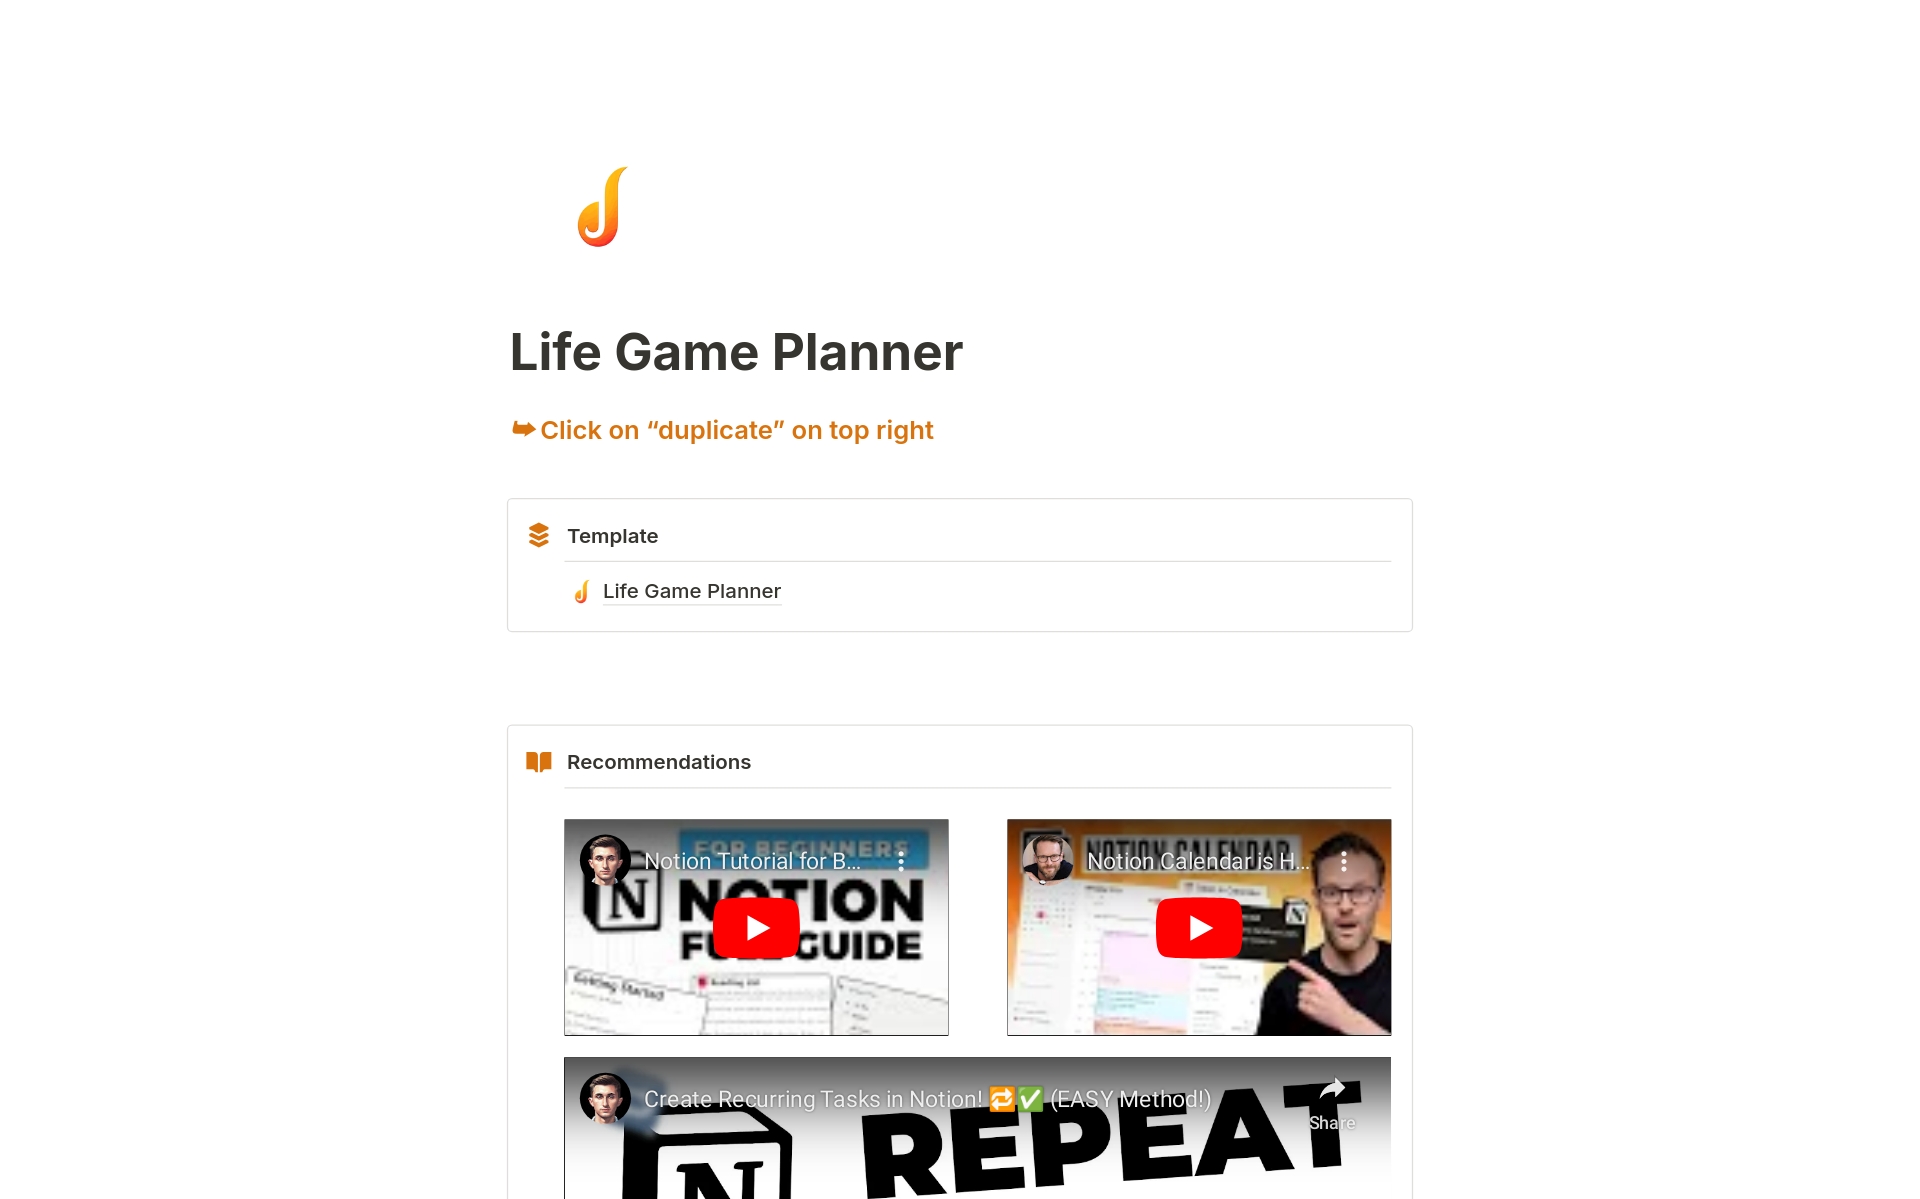 Vista previa de una plantilla para Life Game Planner